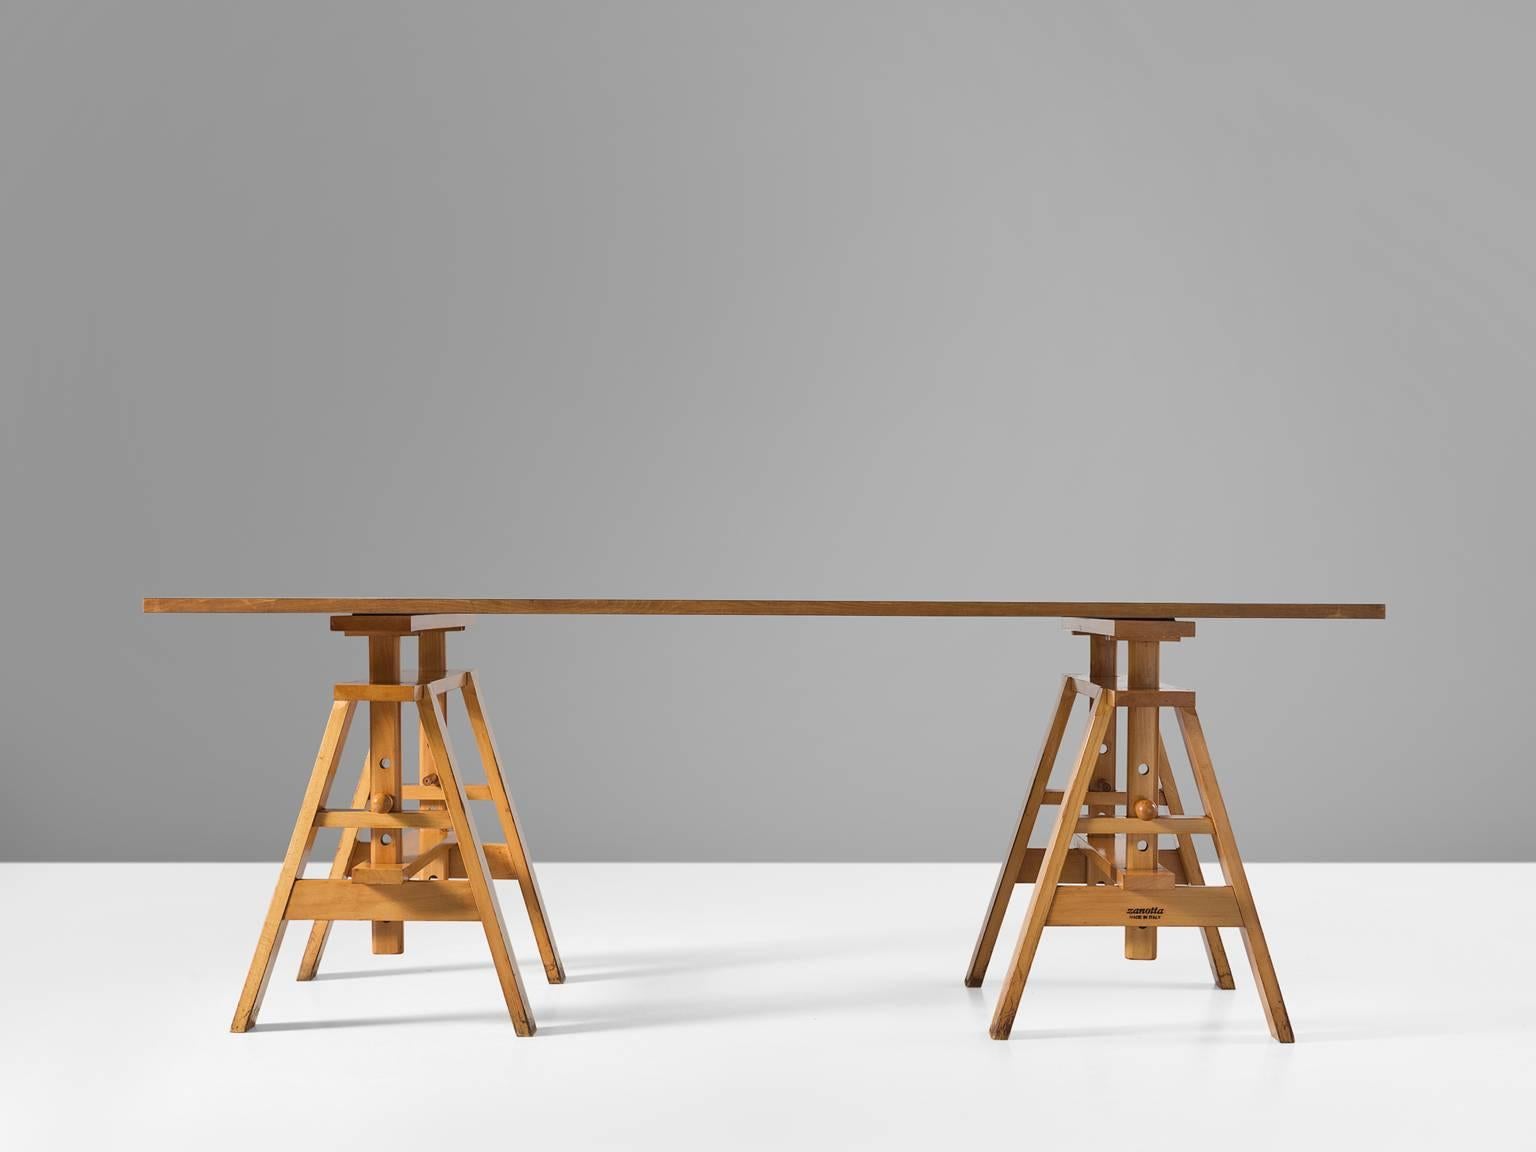 Italian Leonardo Table by Achille Castiglioni for Zanotta